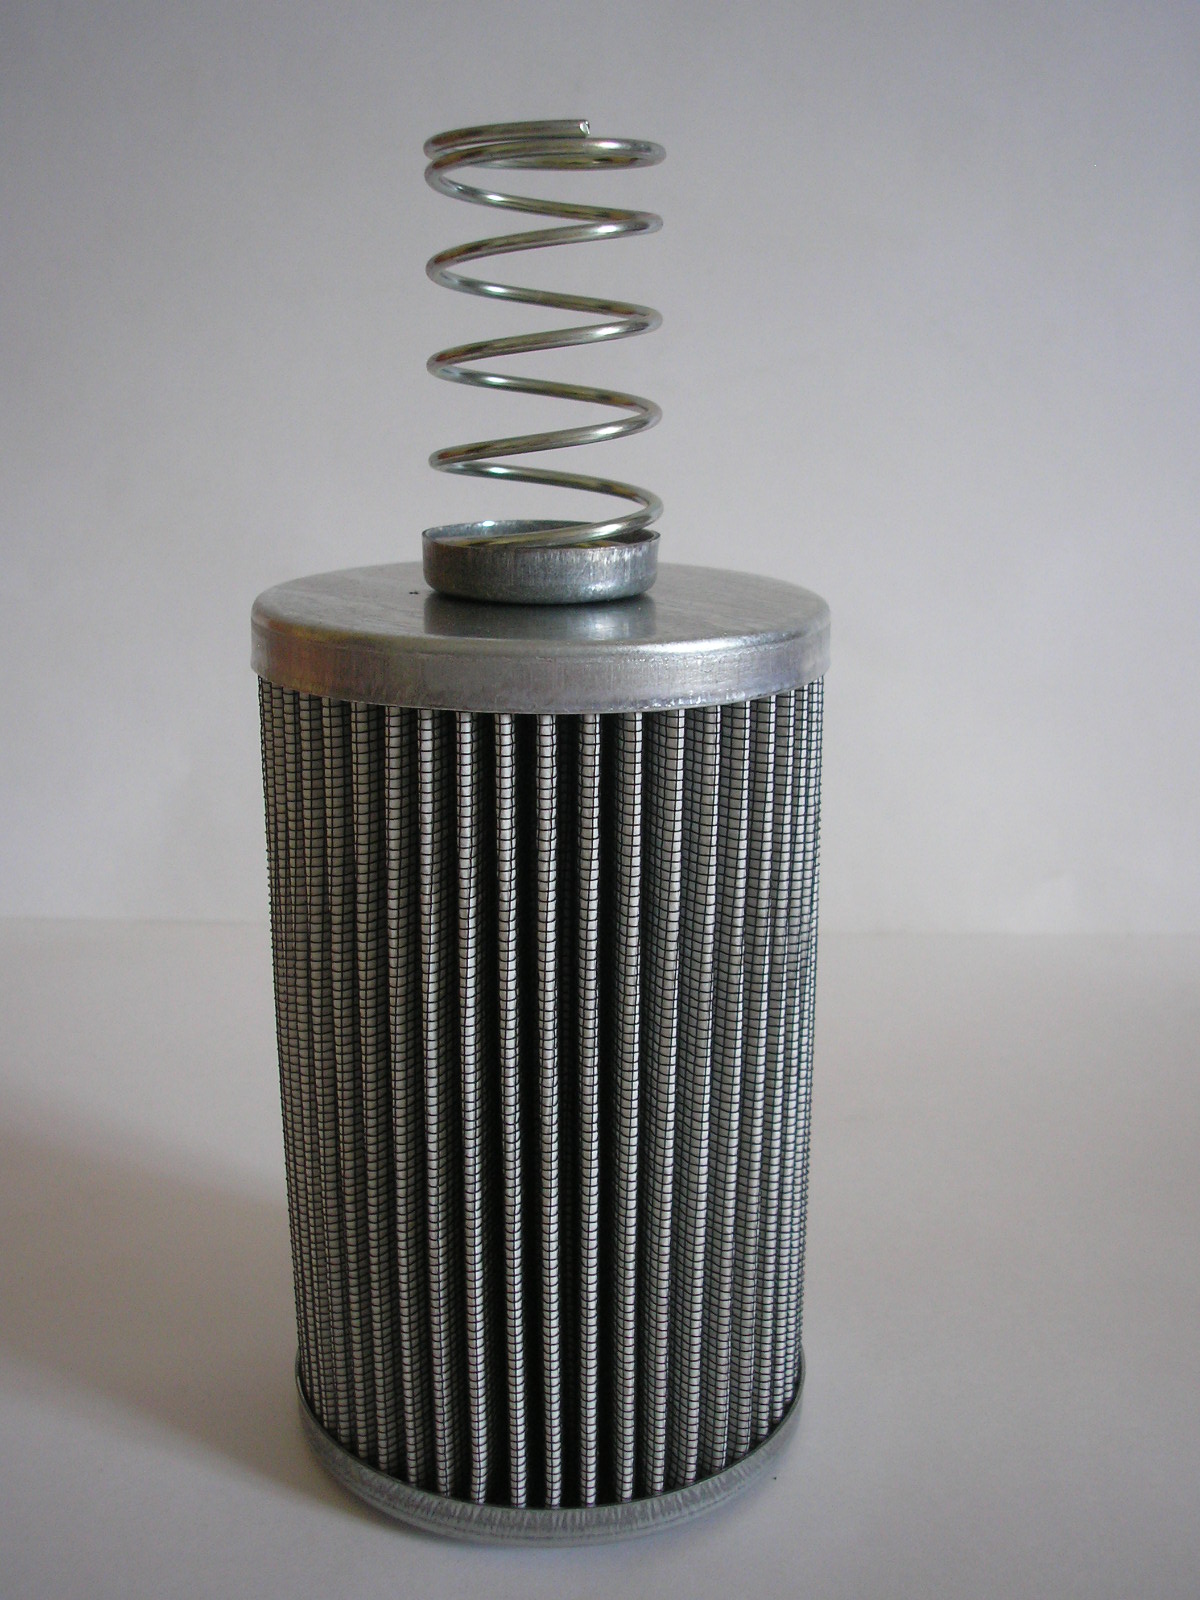 Фильтр топливный т 25. Фильтр МФ.Т.24. Фильтрующий элемент МФ М 393 40-85/100. Фильтр топливный МФ.Т.24 f20-90/148. Фильтр топливный МФ.Т.118 20-55/60.